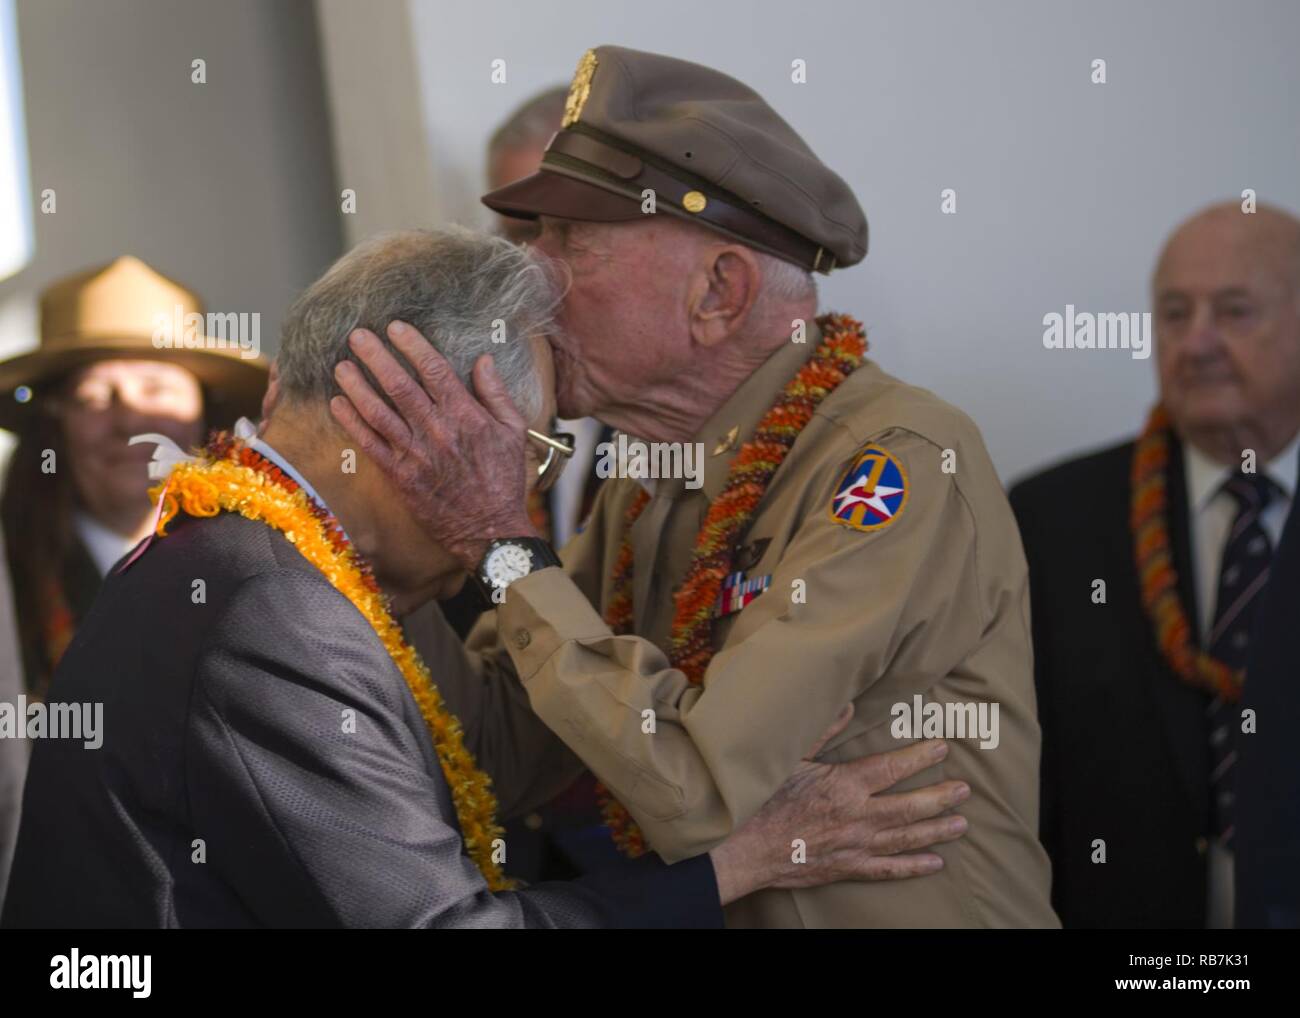 PEARL HARBOR (déc. 6, 2016) Jerry Yellin, ancien capitaine et WWII Army Air Force P-51 pilot embrasse le Dr Hiroya Sugano M.D, directeur général de l'chasseur Zero admirateurs Club durant la 6e édition annuelle de cantine noirci cérémonie à l'USS Arizona Memorial au cours de la 75e Commémoration de l'attaque sur Pearl Harbor. La cantine noirci est une relique d'un raid aérien plus Shizauoka, au Japon en 1945, et est utilisé pour verser le whisky bourbon comme une offrande aux morts dans les eaux sacrées de Pearl Harbor. Le 7 décembre 2016 marque le 75e anniversaire de l'attaque sur Pearl Harbor et d'Oahu. Depuis le 7 Déc., 19 Banque D'Images